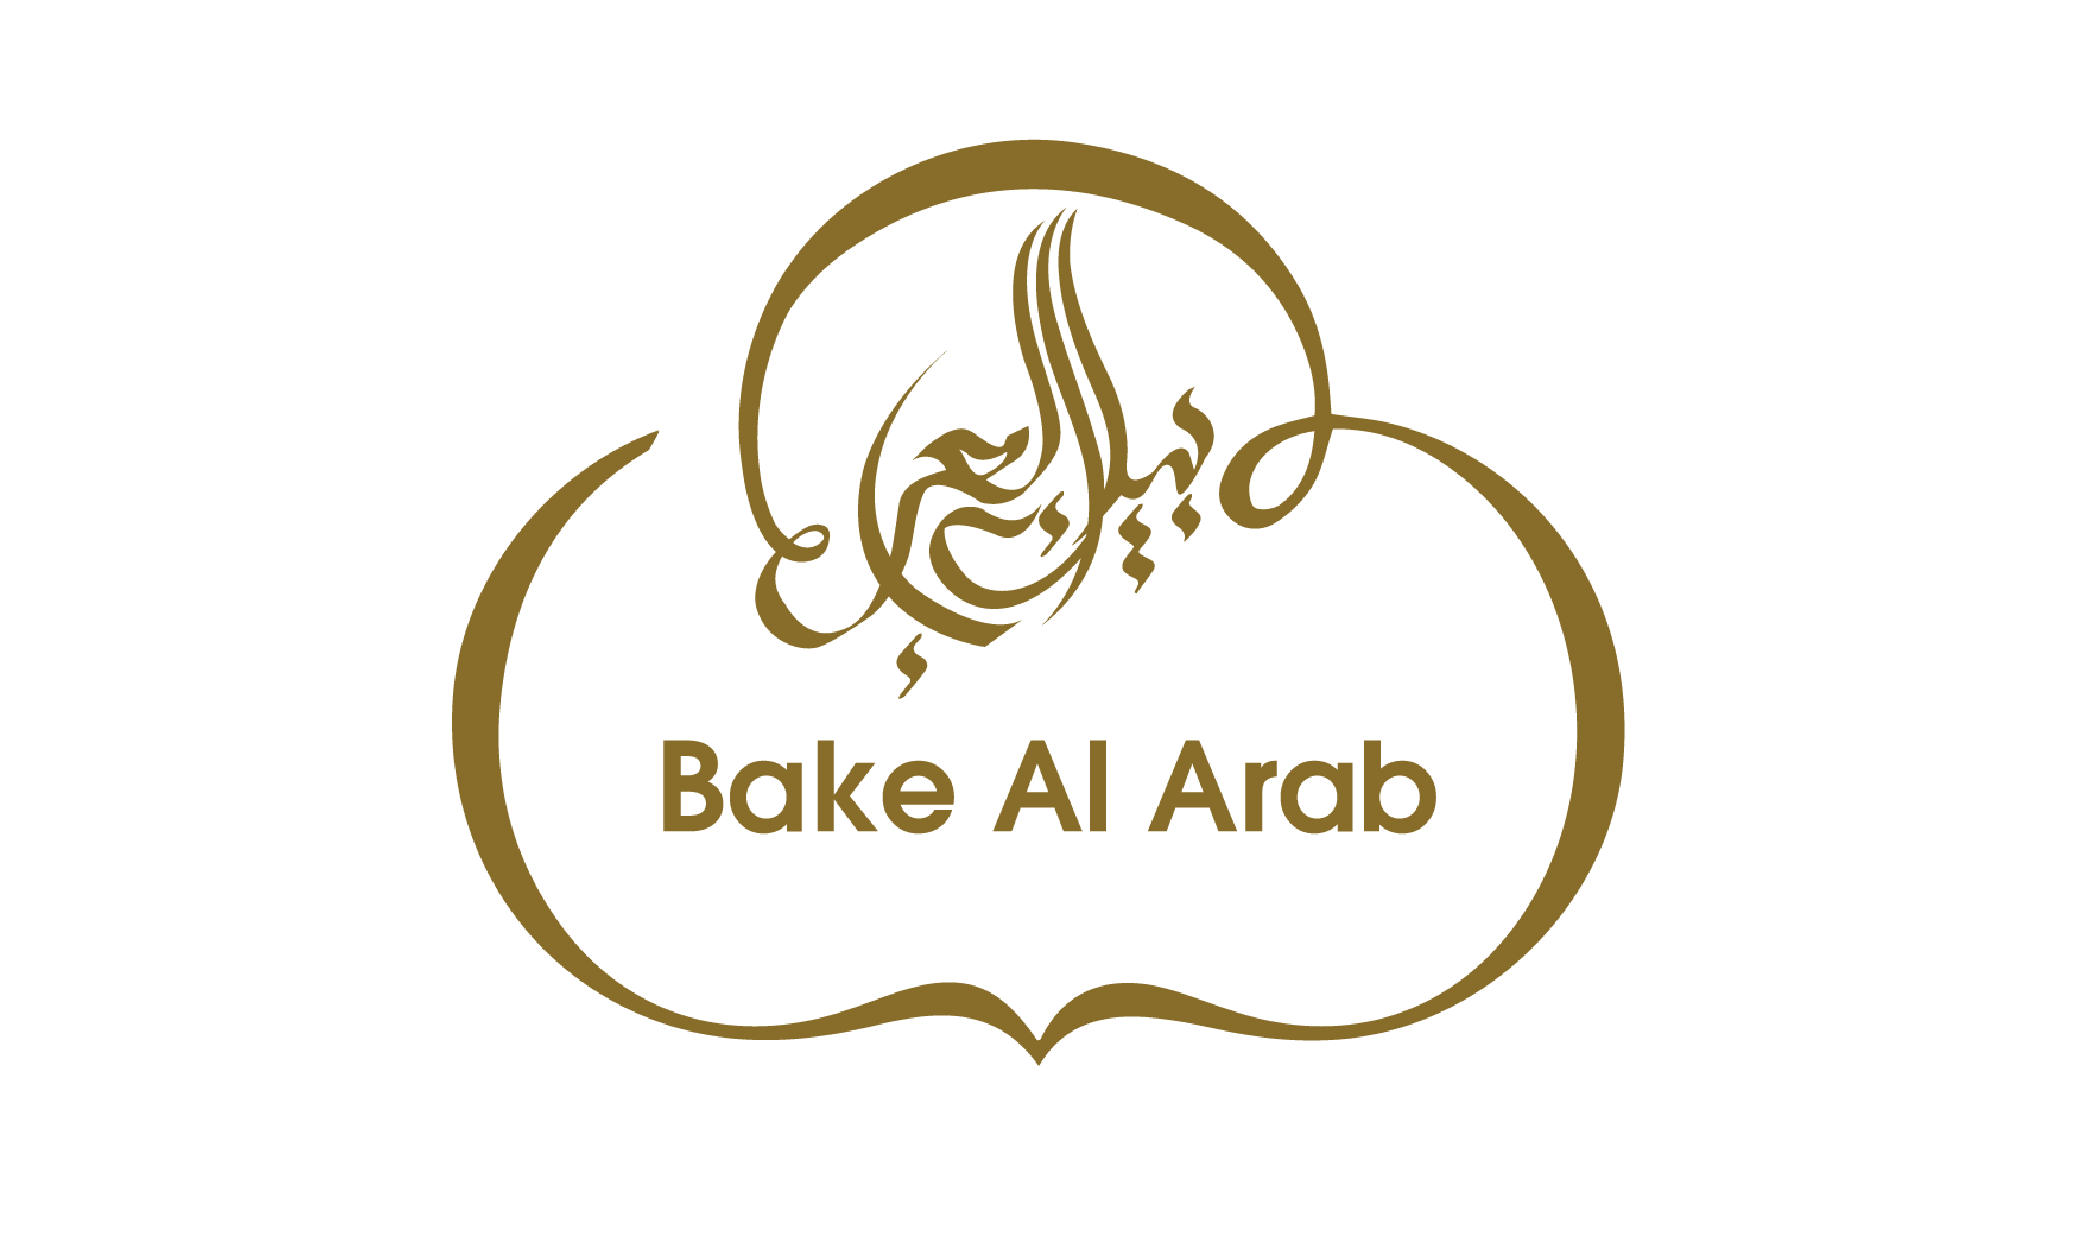 bake al arab